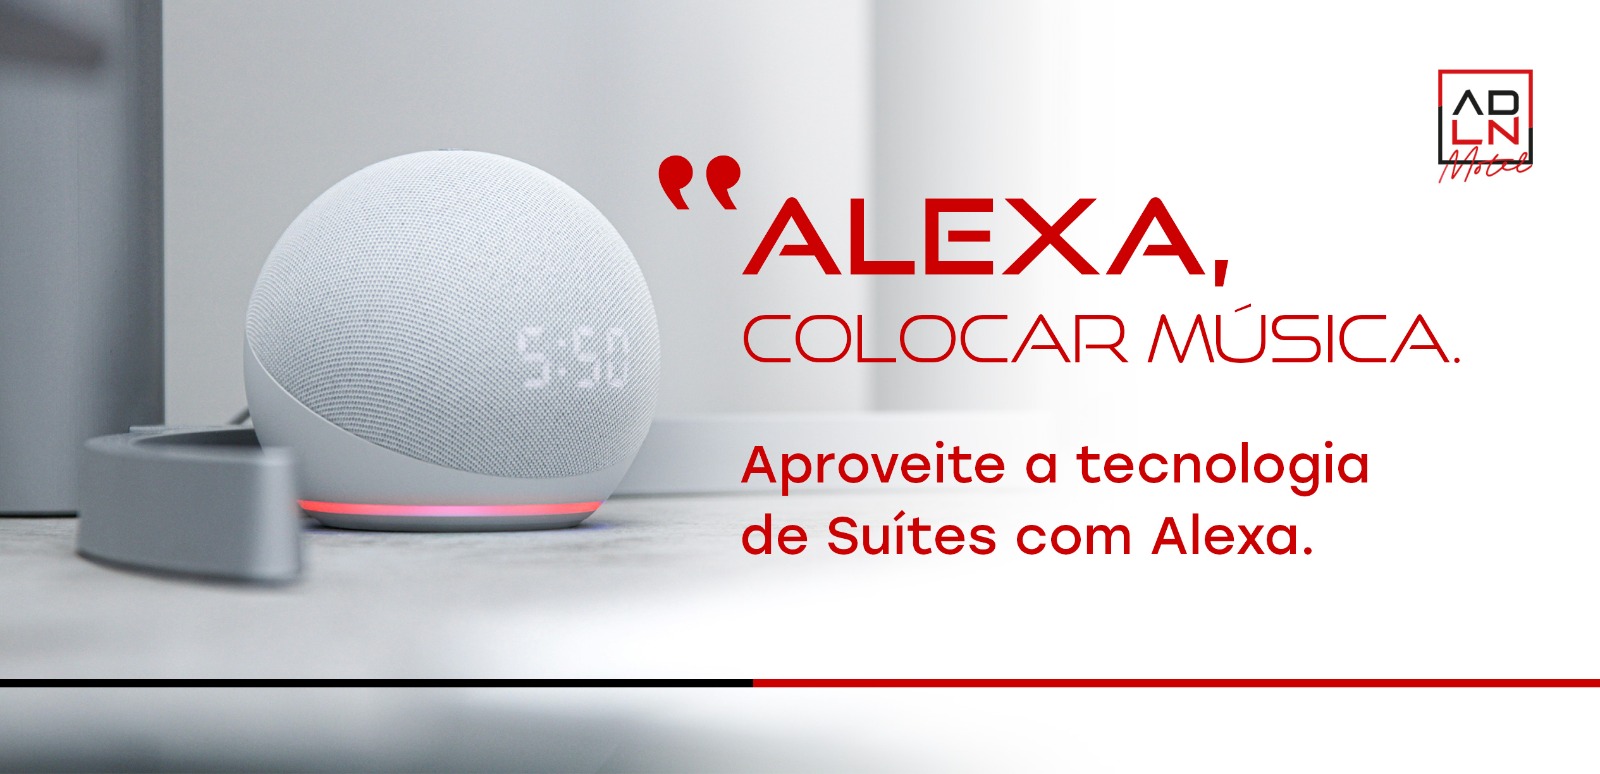 Alexa, colocar música. Aproveite a tecnologia de suítes com a Alexa.